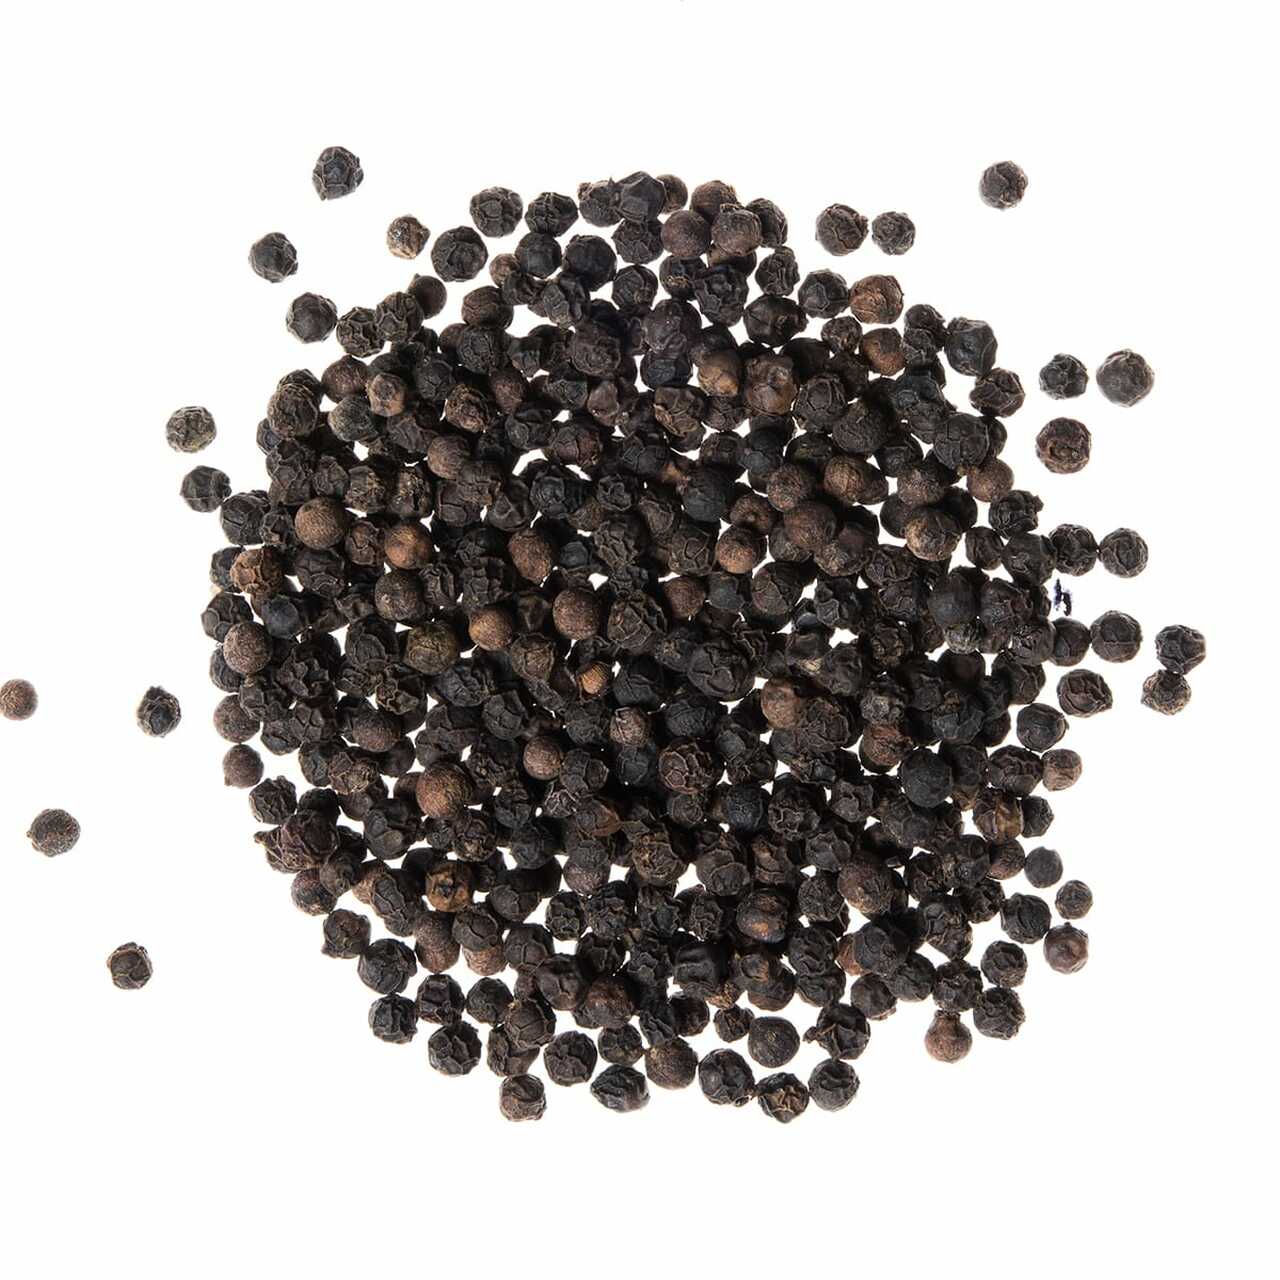 Poivre noir grains 500g, Epices, poivres